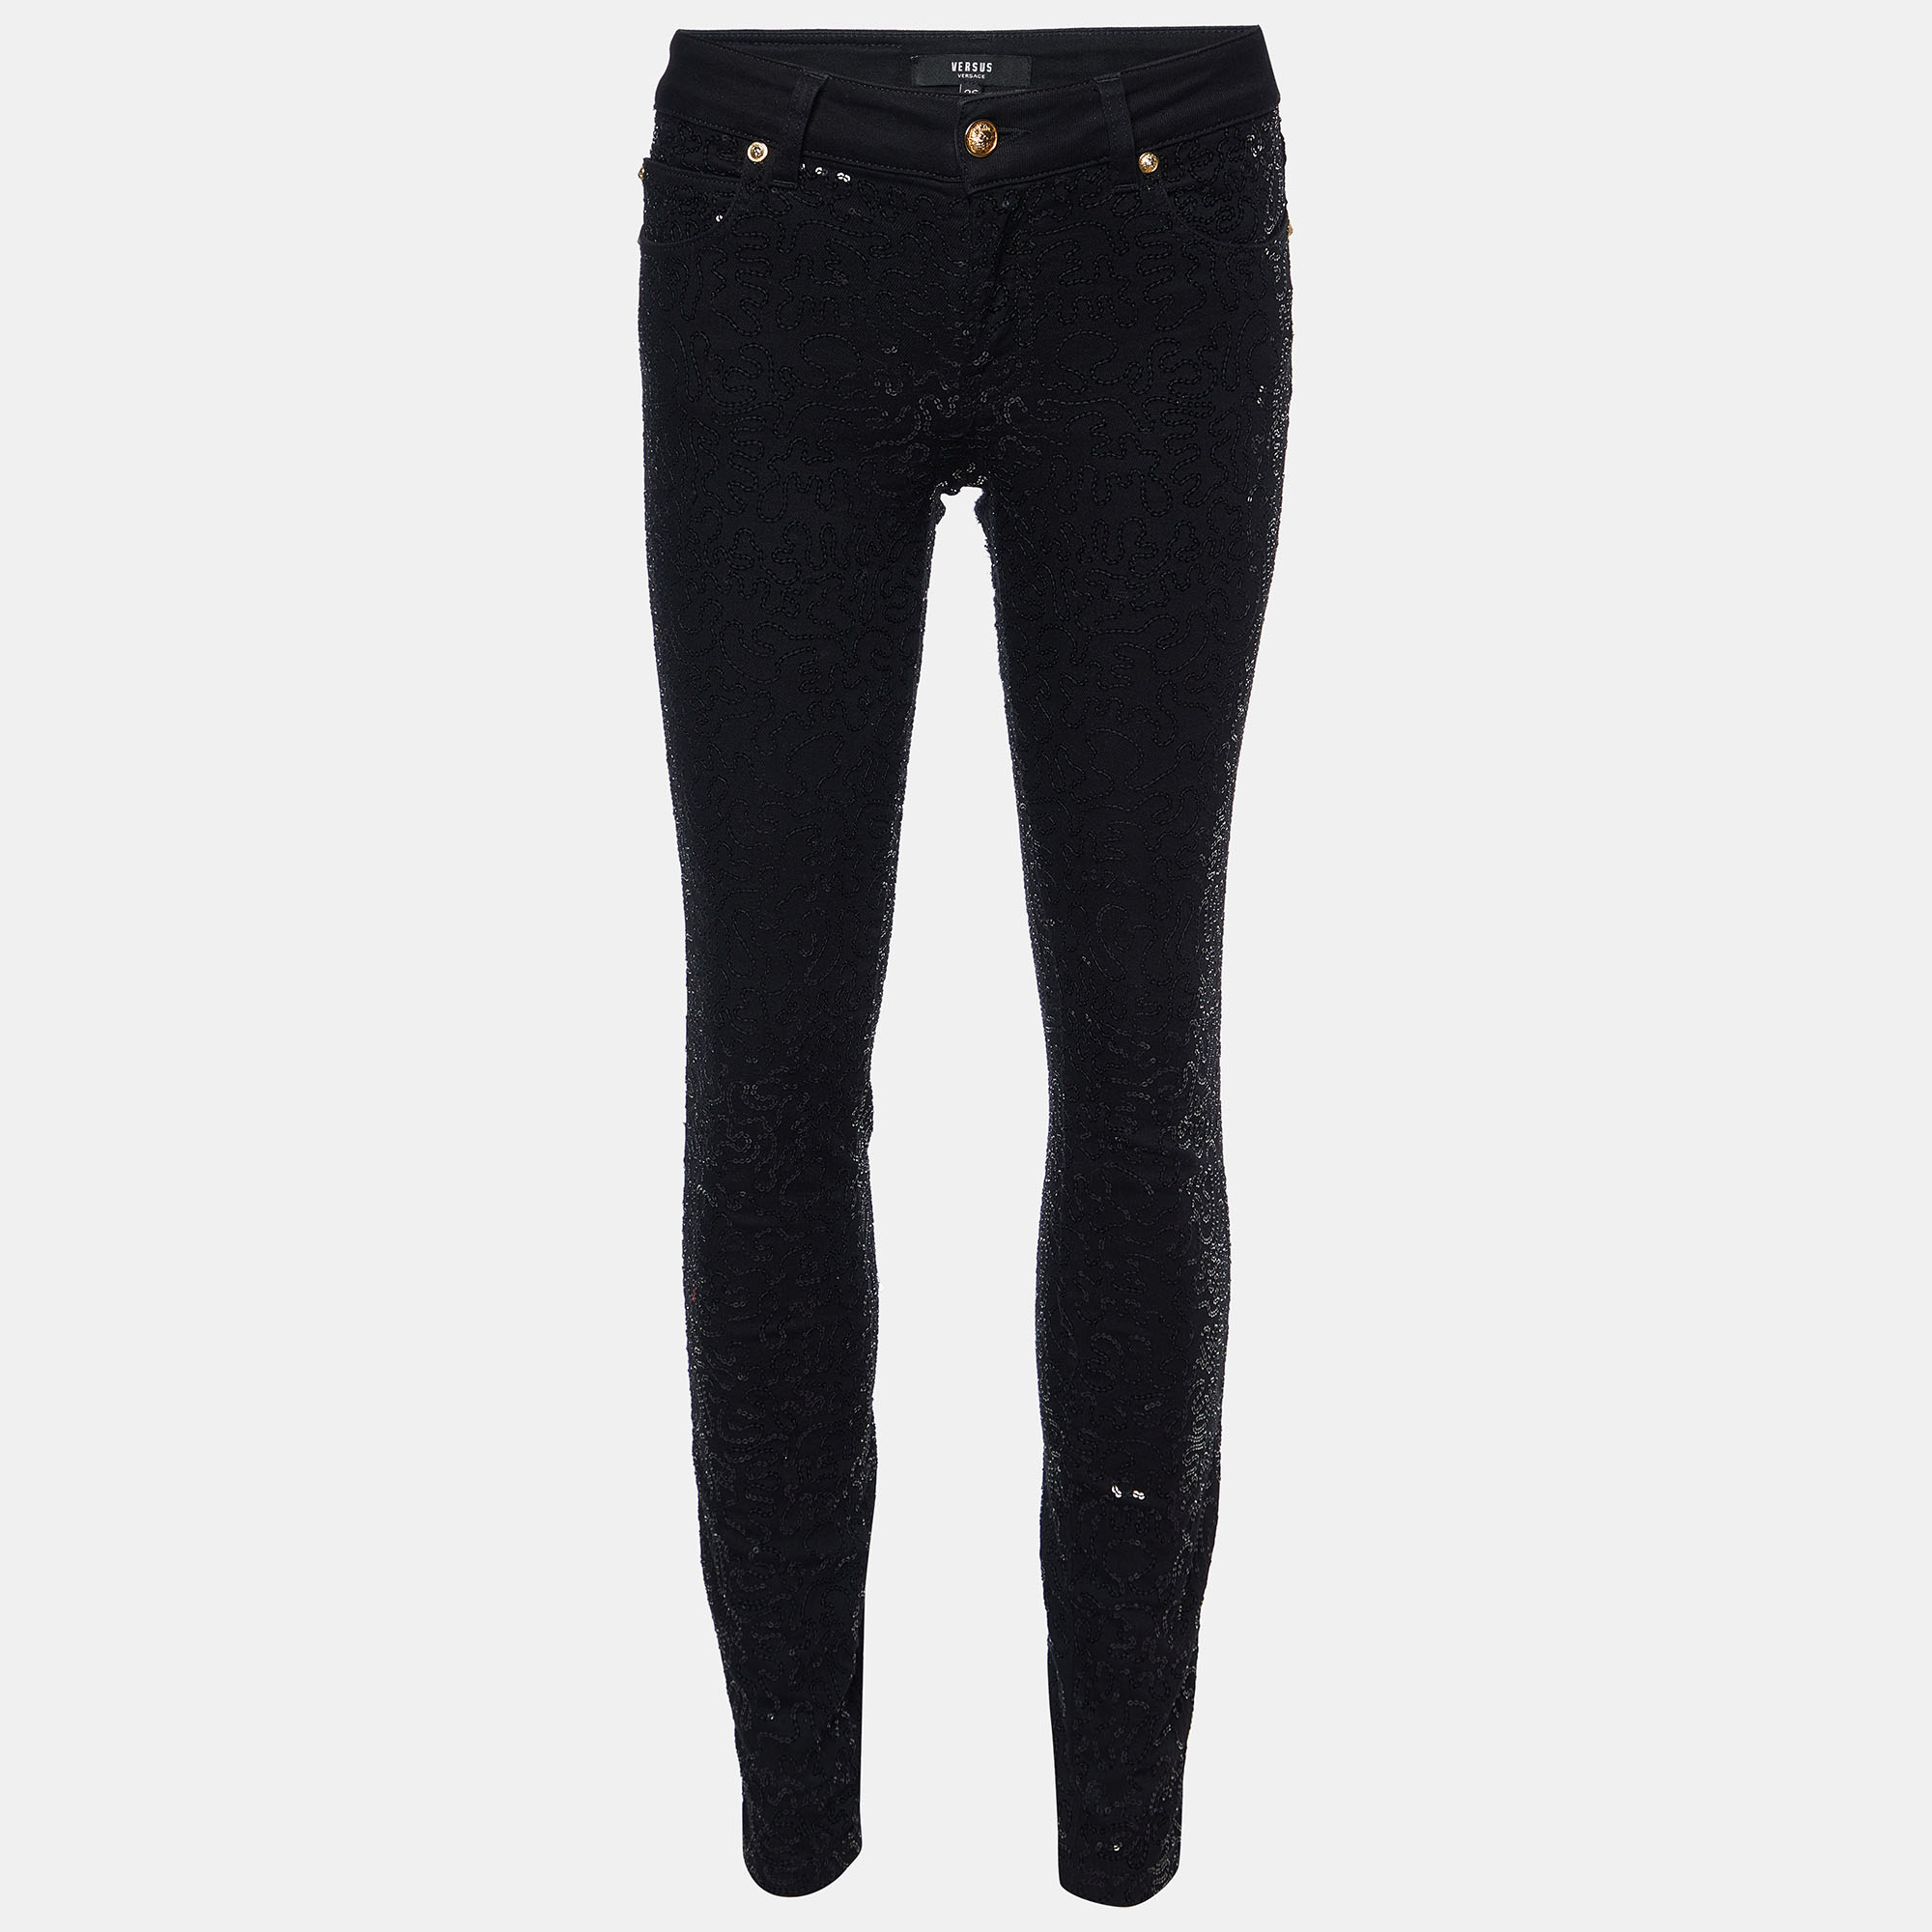 Pre-owned Versus Black Sequined Denim Skinny Jeans S/waist 28"